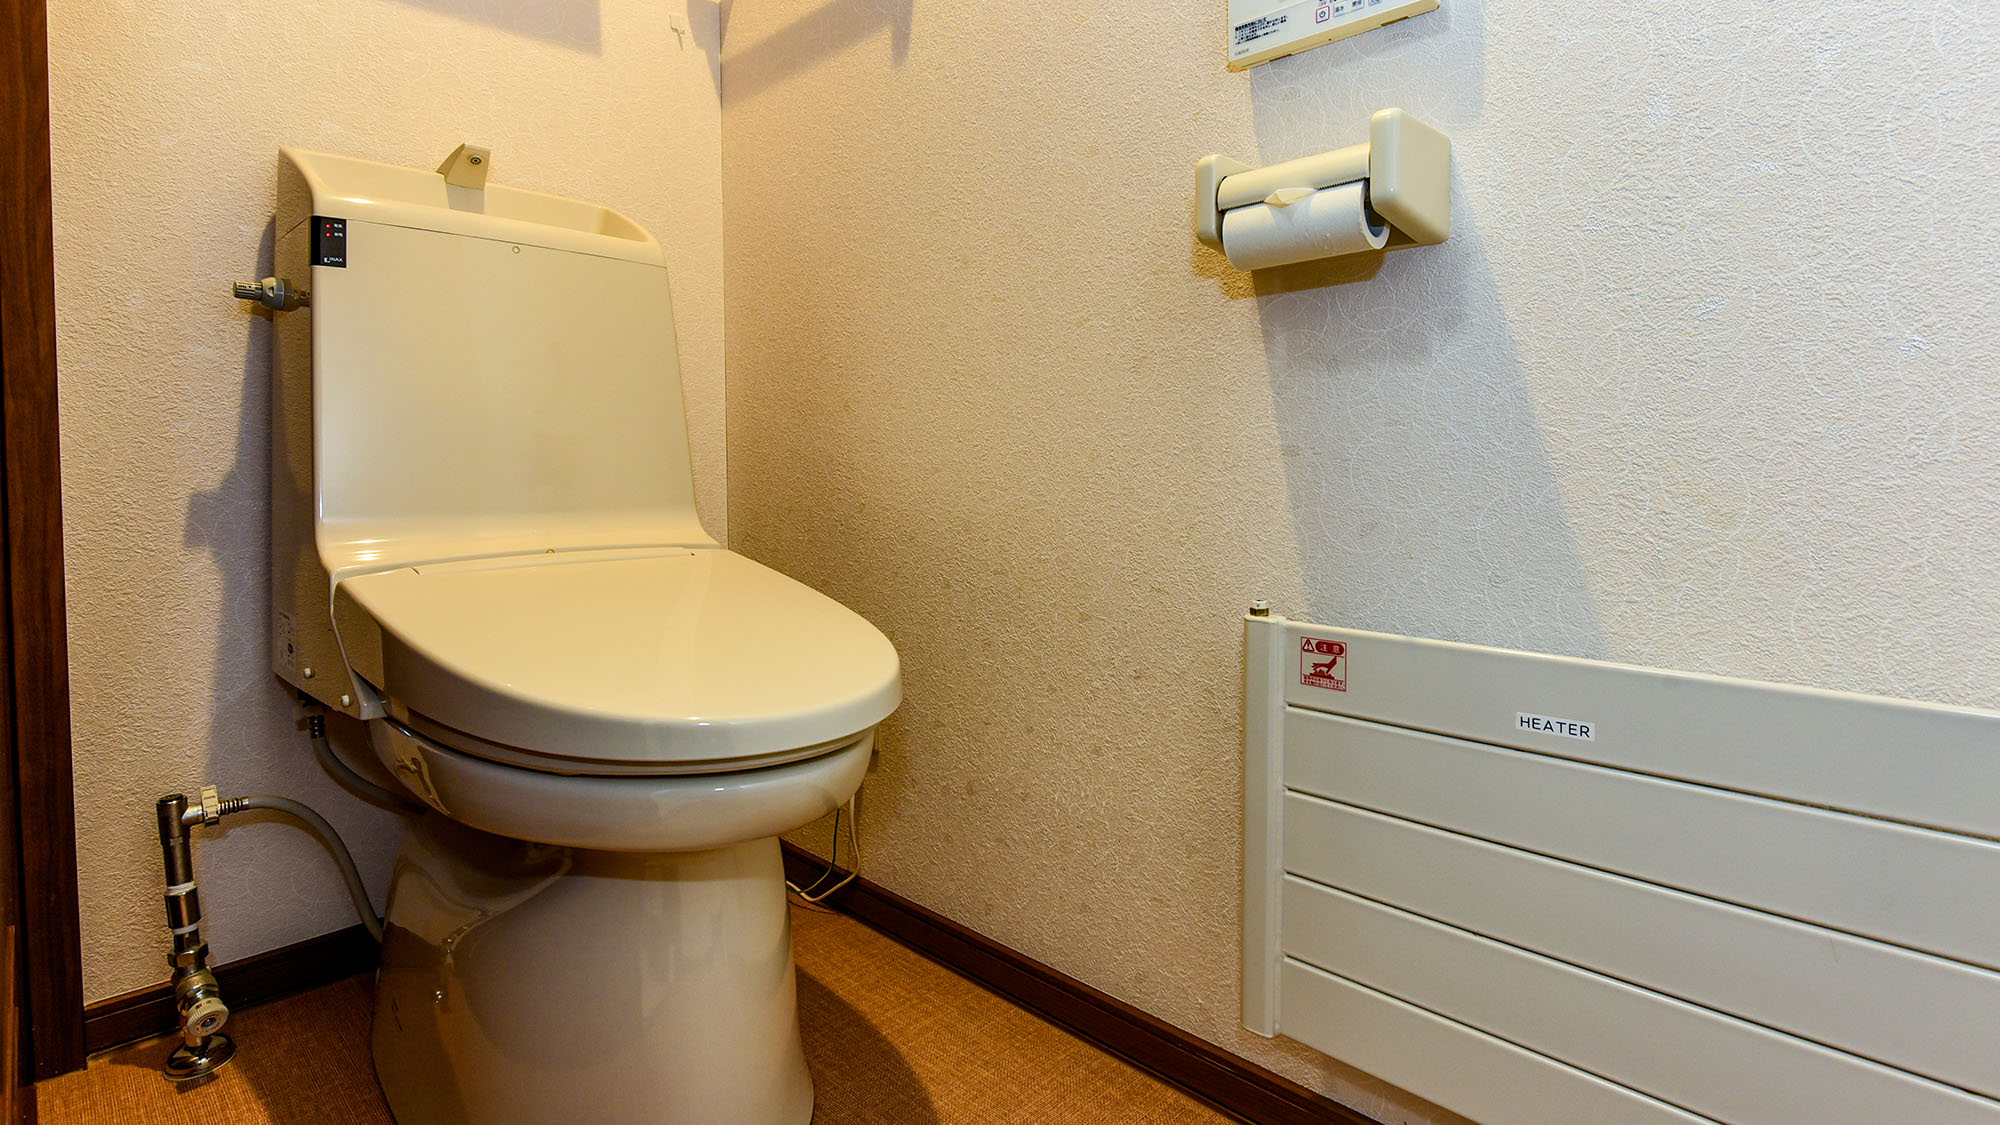 ・【トイレ】全部で3箇所ある洗浄機能付きトイレ。大人数でも安心です